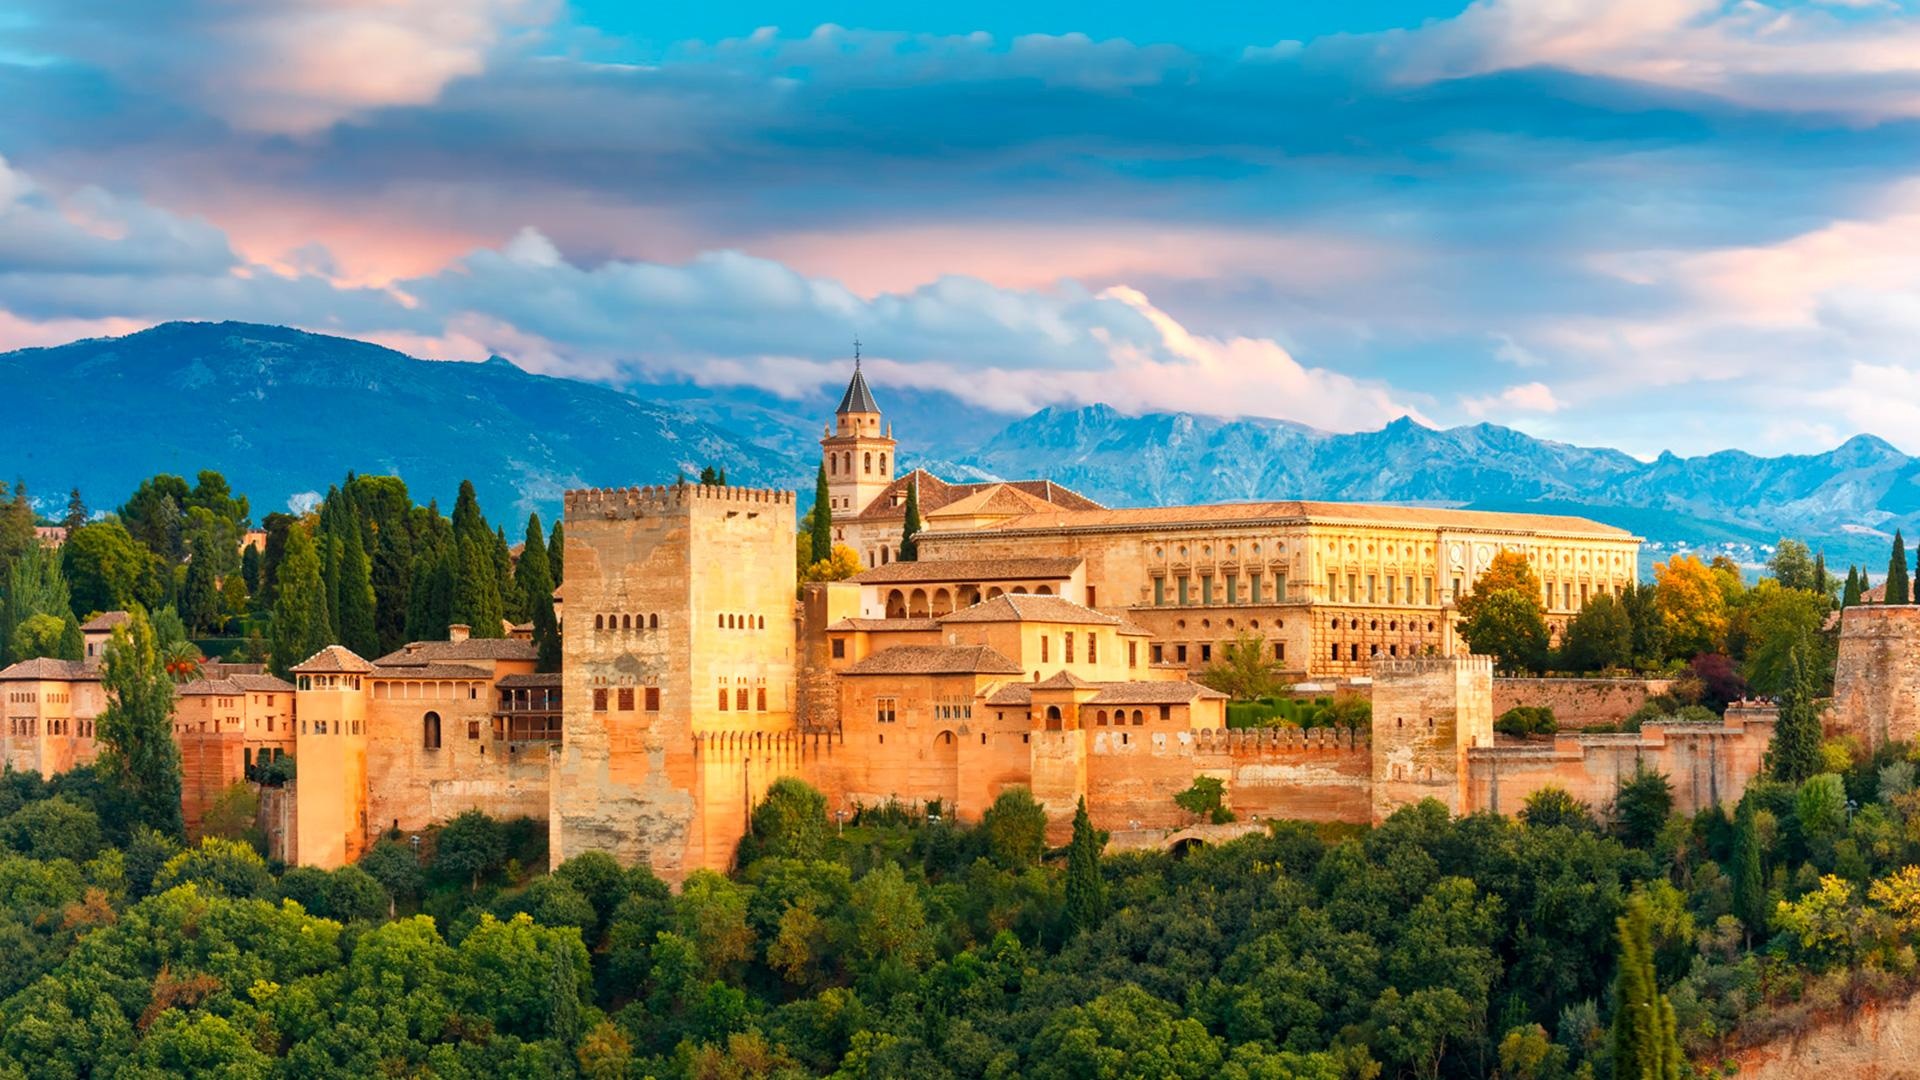 The Alhambra, granada spain wallpapers, top free, 1920x1080 Full HD Desktop